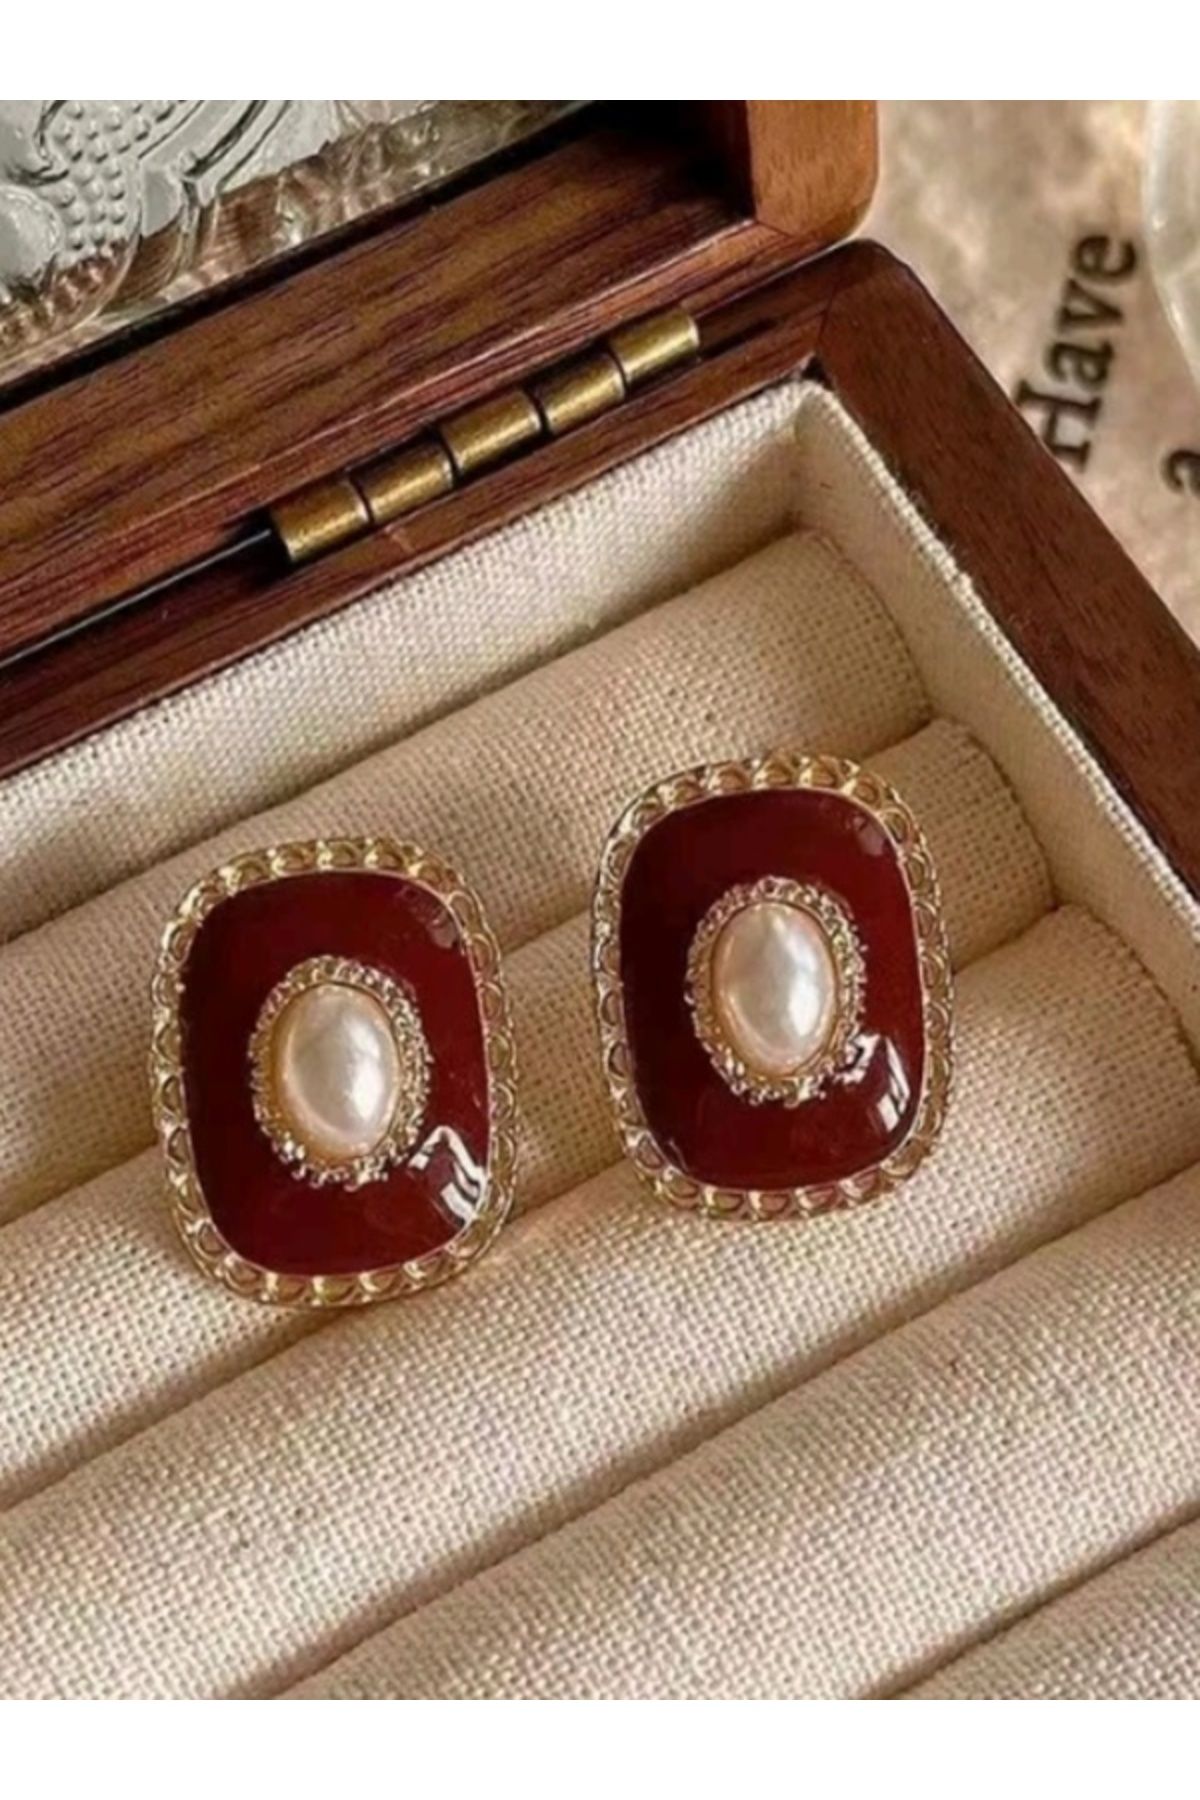 Shisa Jewel İncilerle süslenmiş kırmızı ve altın küpeler, S925 gümüş iğne, retro tarzı, üst düzey. (11)